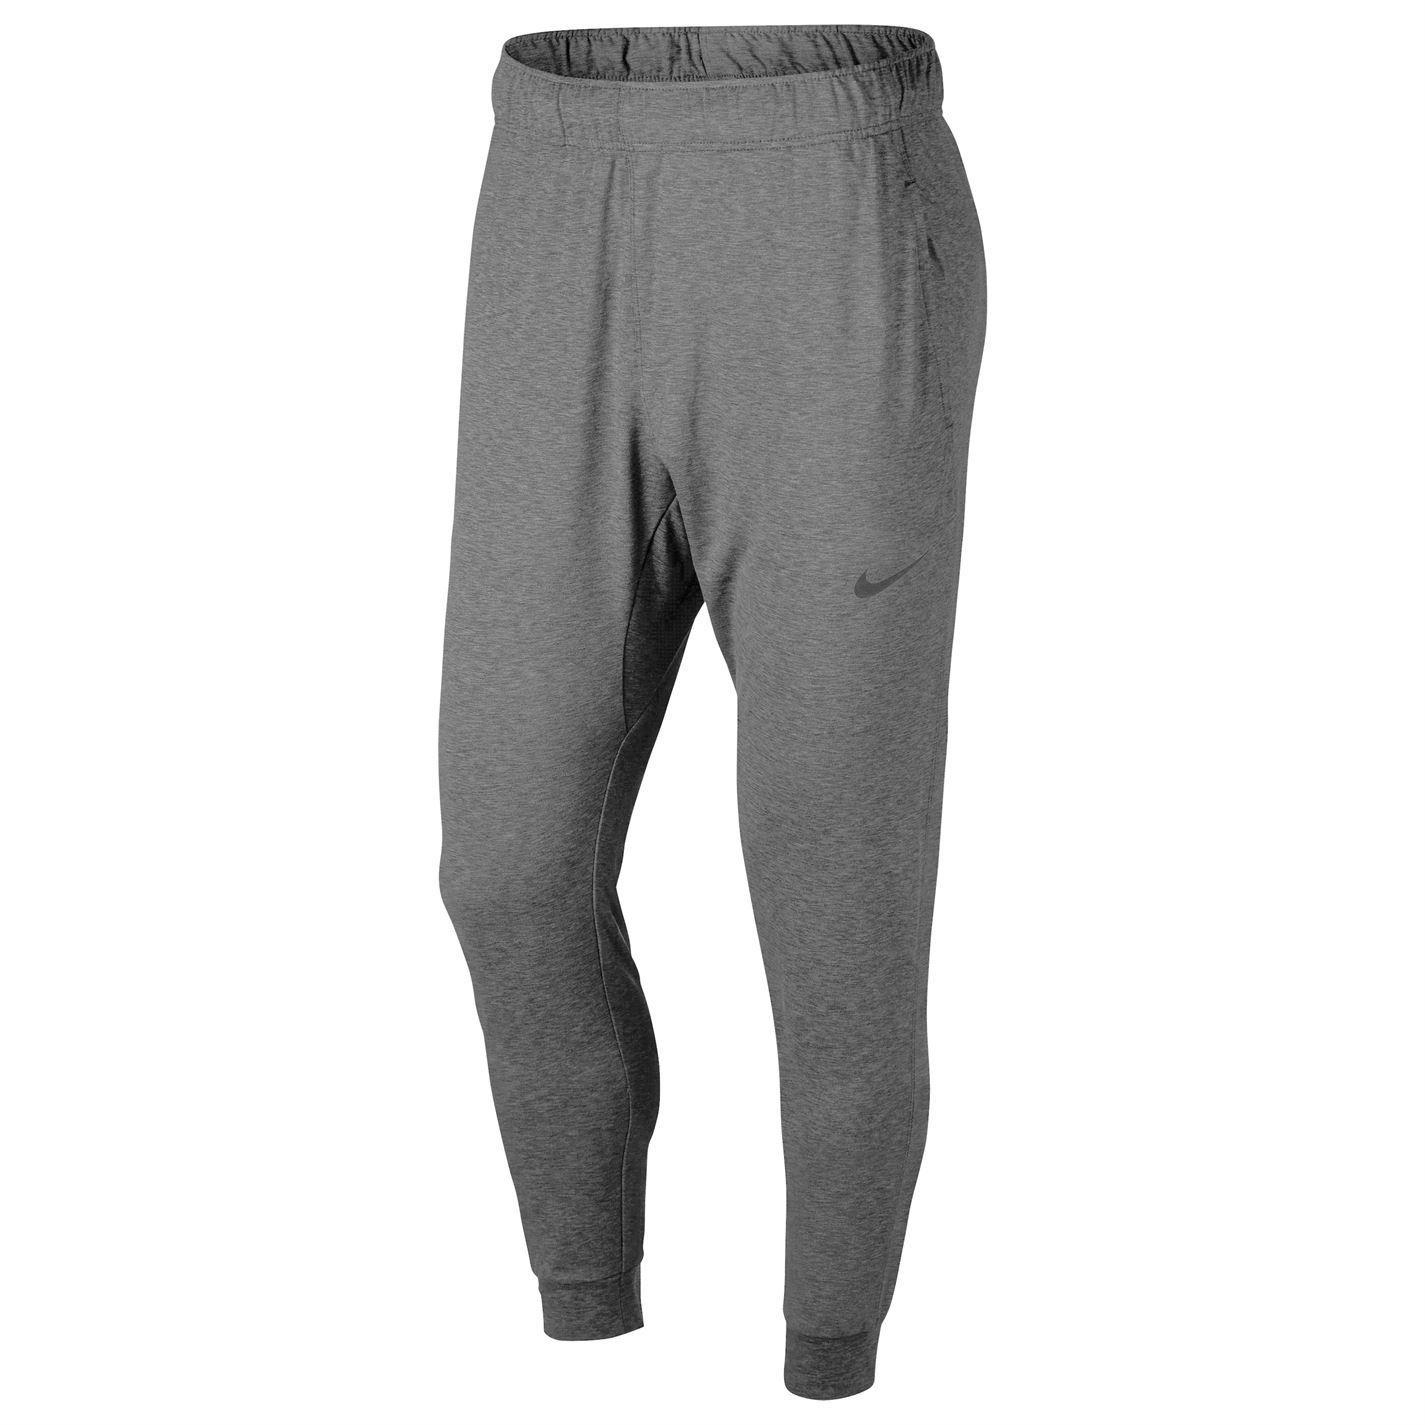 Pantaloni Nike Yoga Dri-FIT pentru Barbati